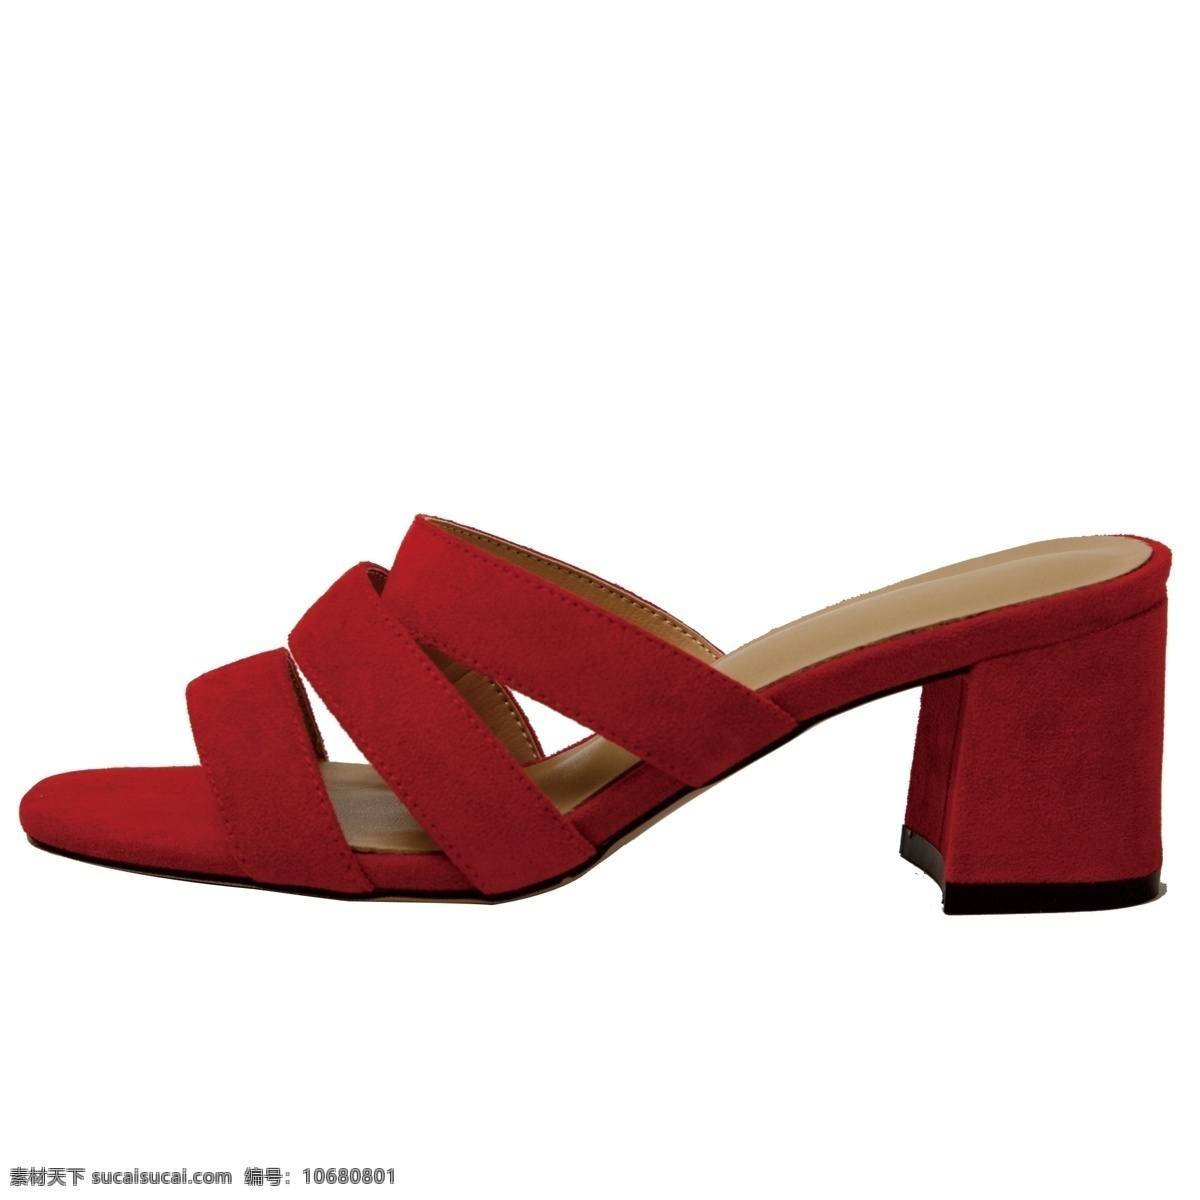 红色 精品 女款 凉鞋 红色鞋子 红色凉鞋 鞋子 生活物品 生活用品 日常生活用品 生活日用 女款凉鞋